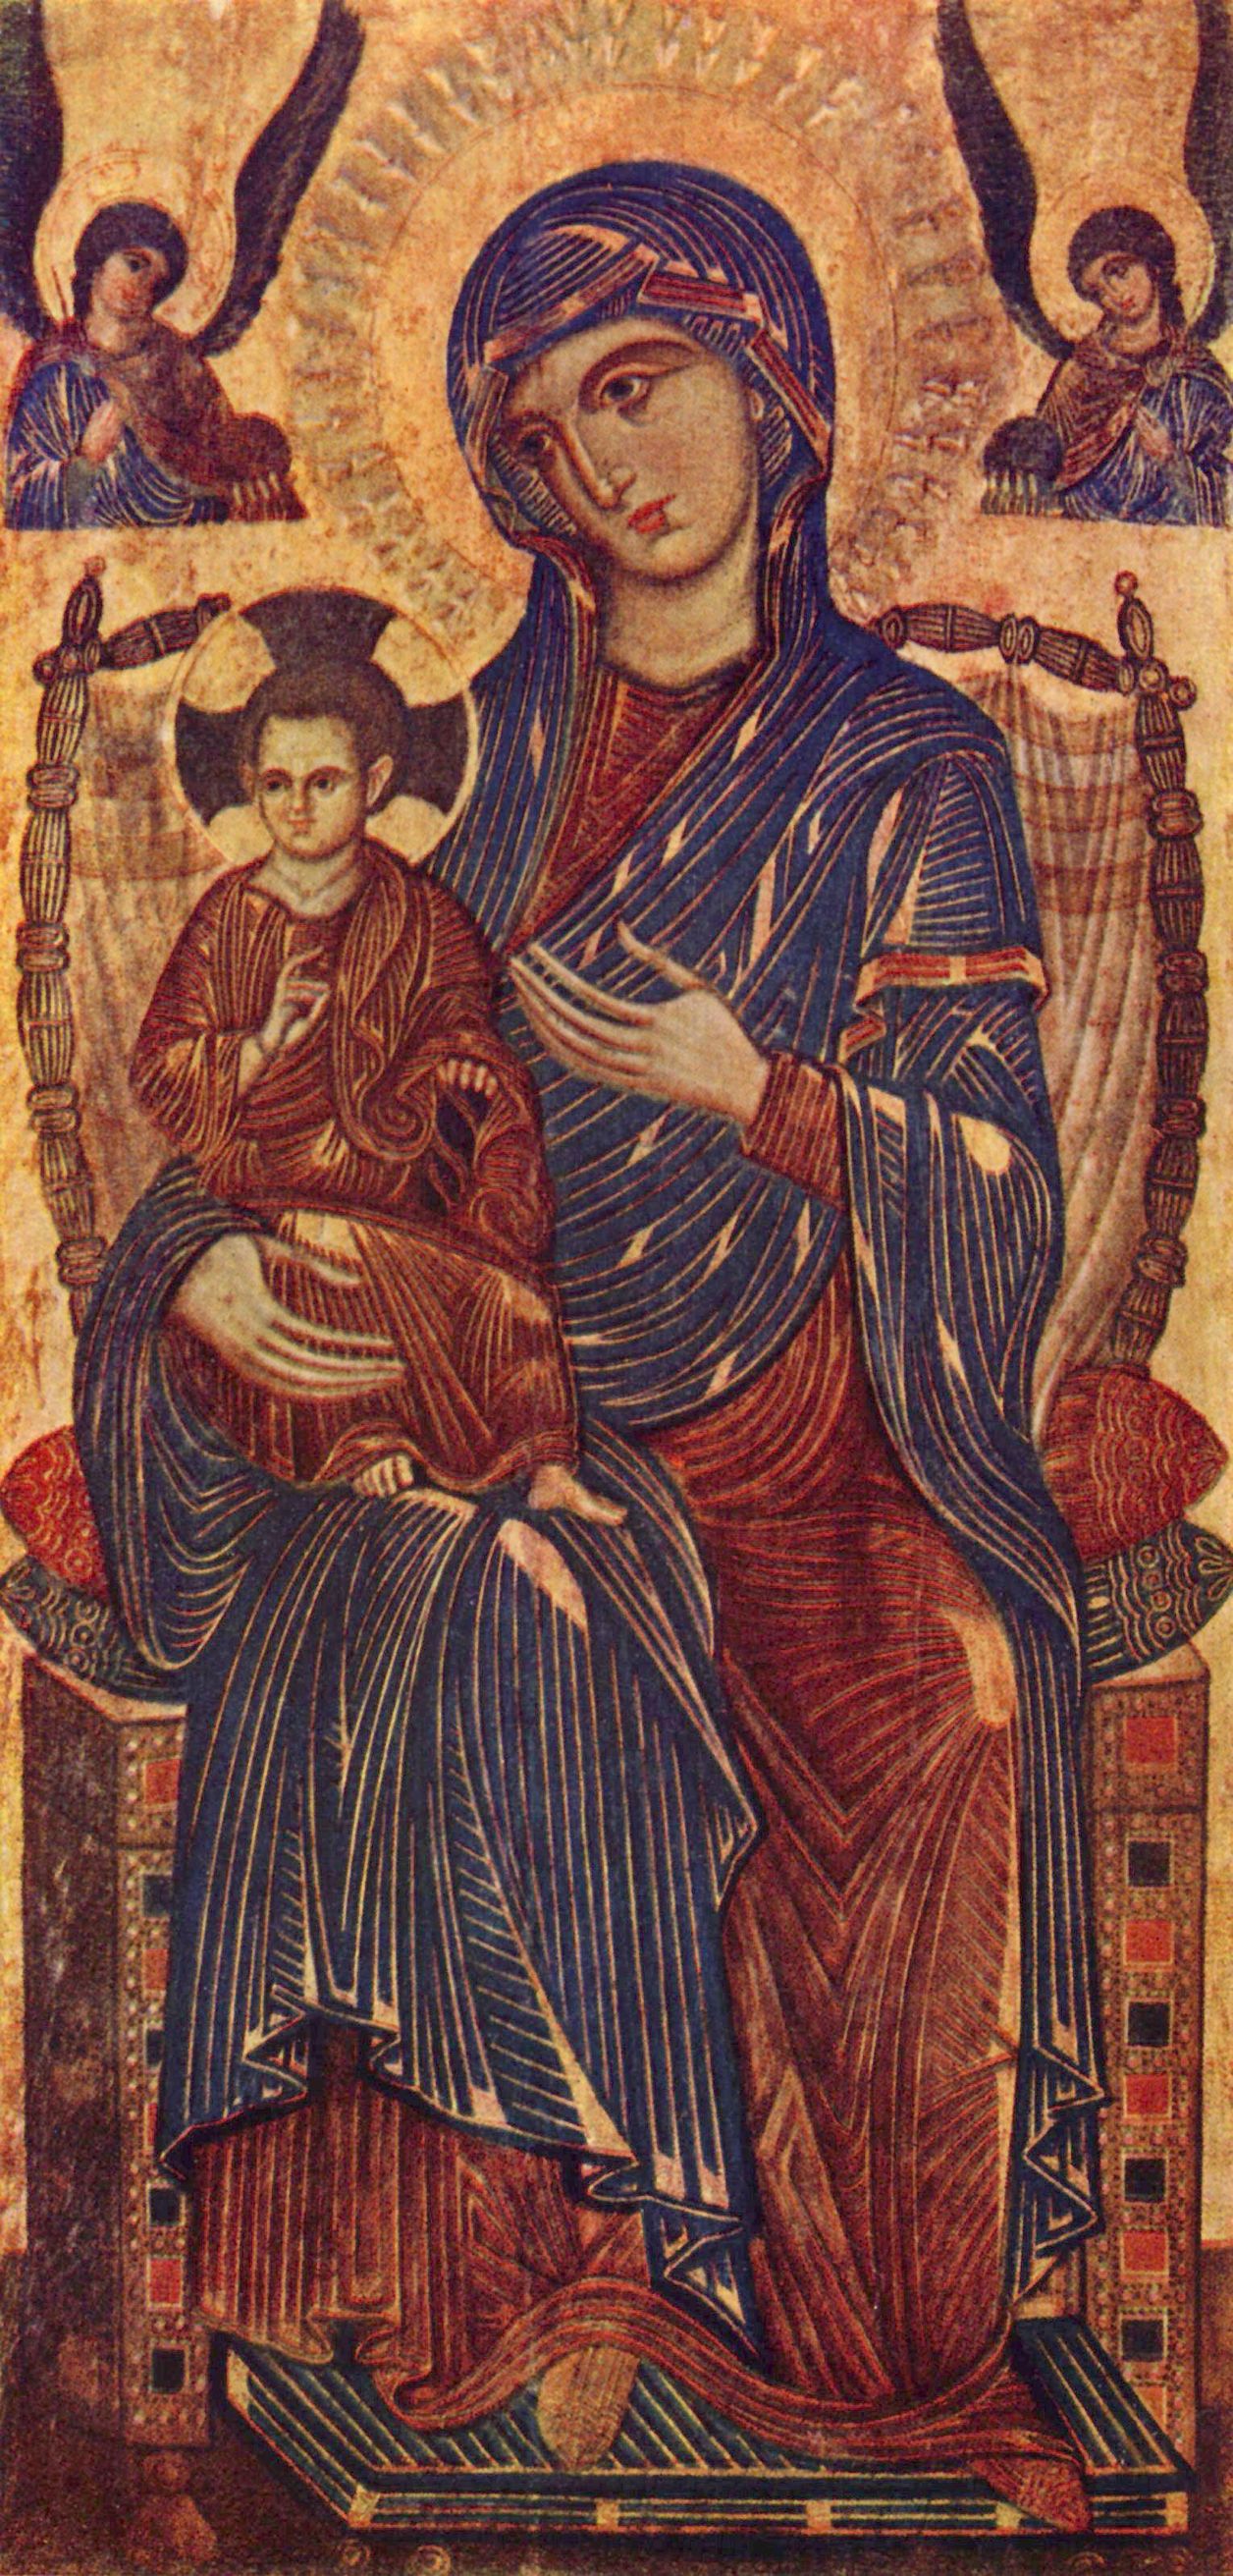 Toskanischer Meister des 13. Jahrhunderts: Thronende Madonna